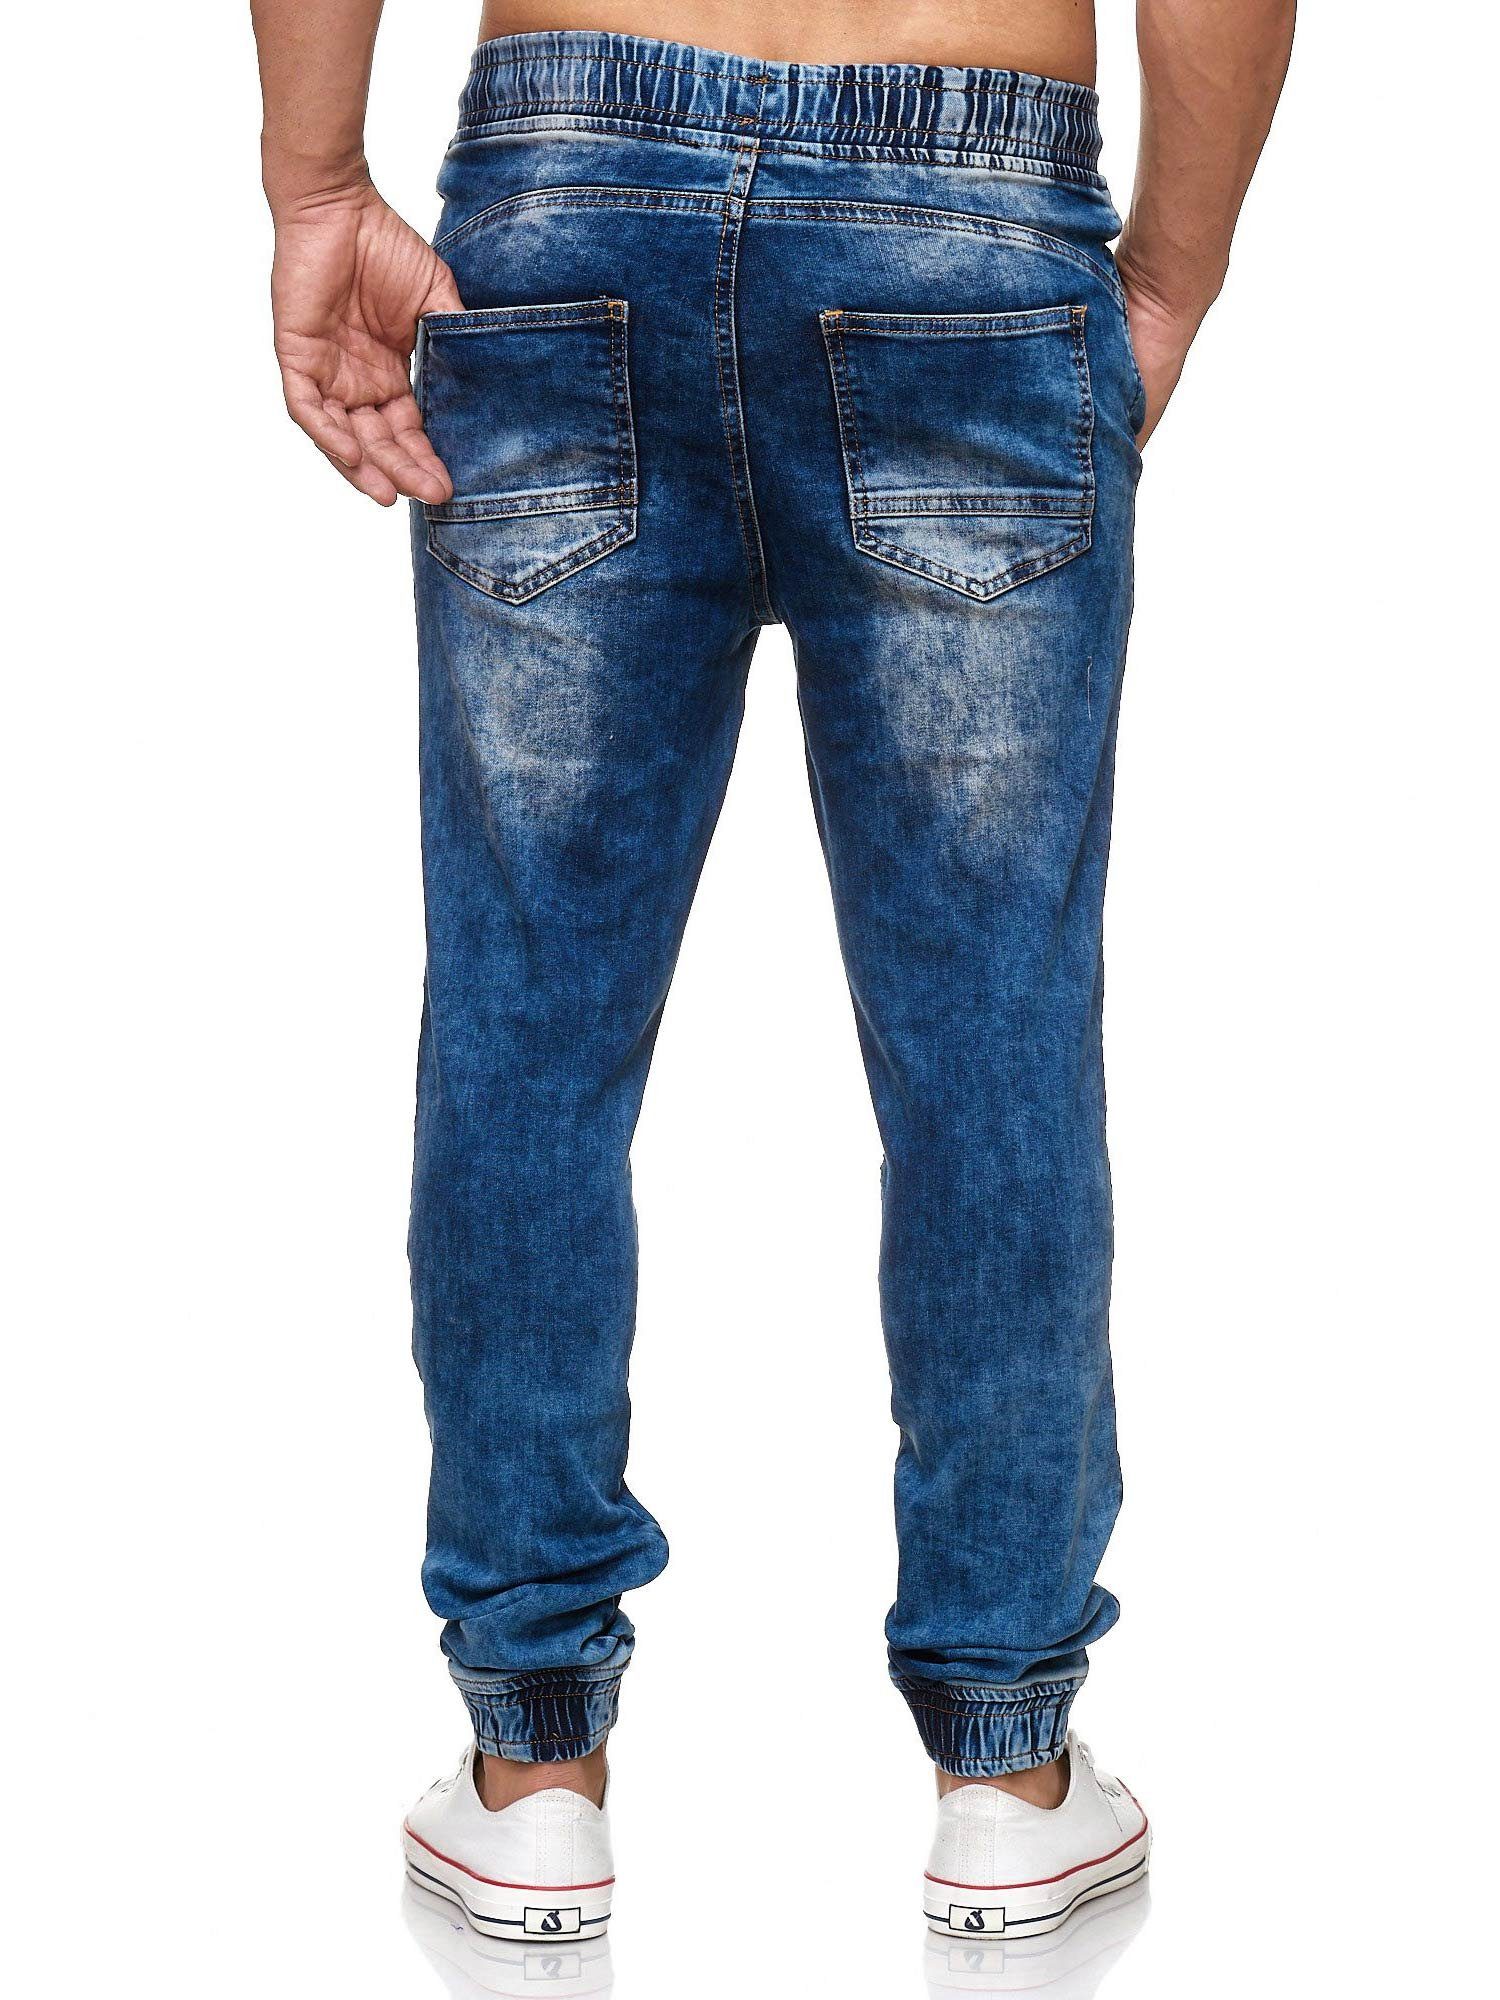 Tazzio Straight-Jeans 16505 Sweat Biker-Look blau im Hose Jogger-Stil &